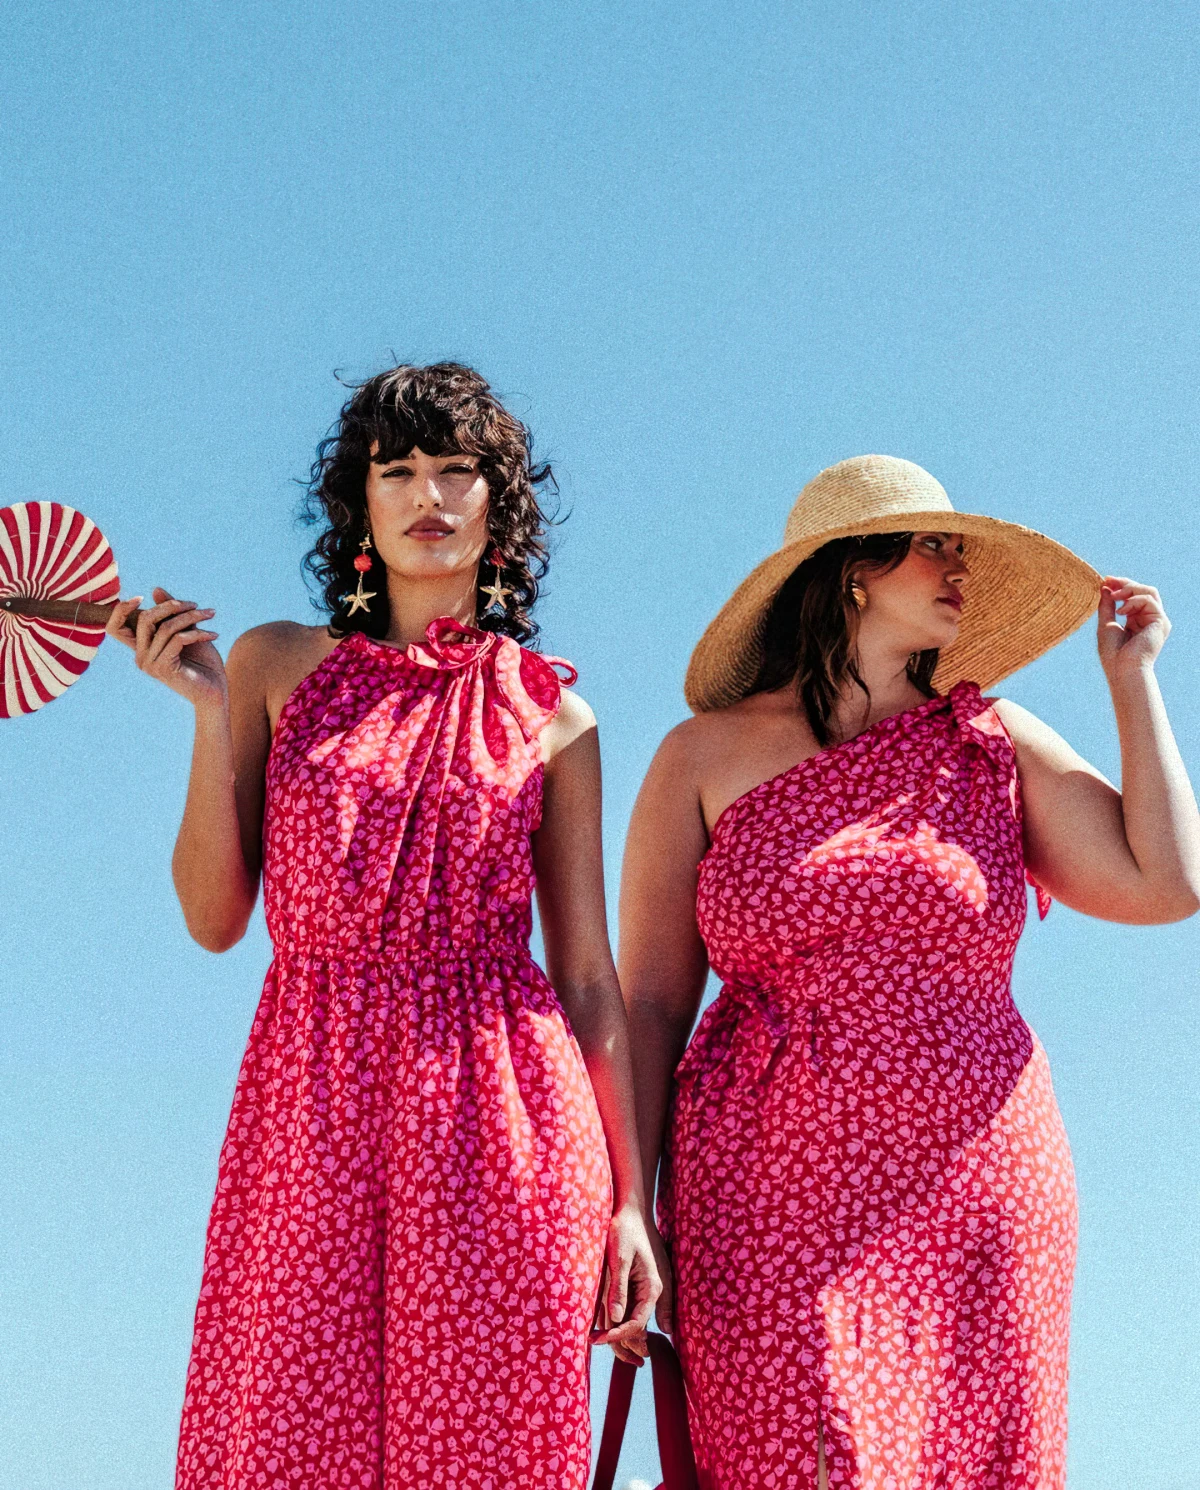 deux femmes robes roses femme svelte et femme ronde avec un chapeau